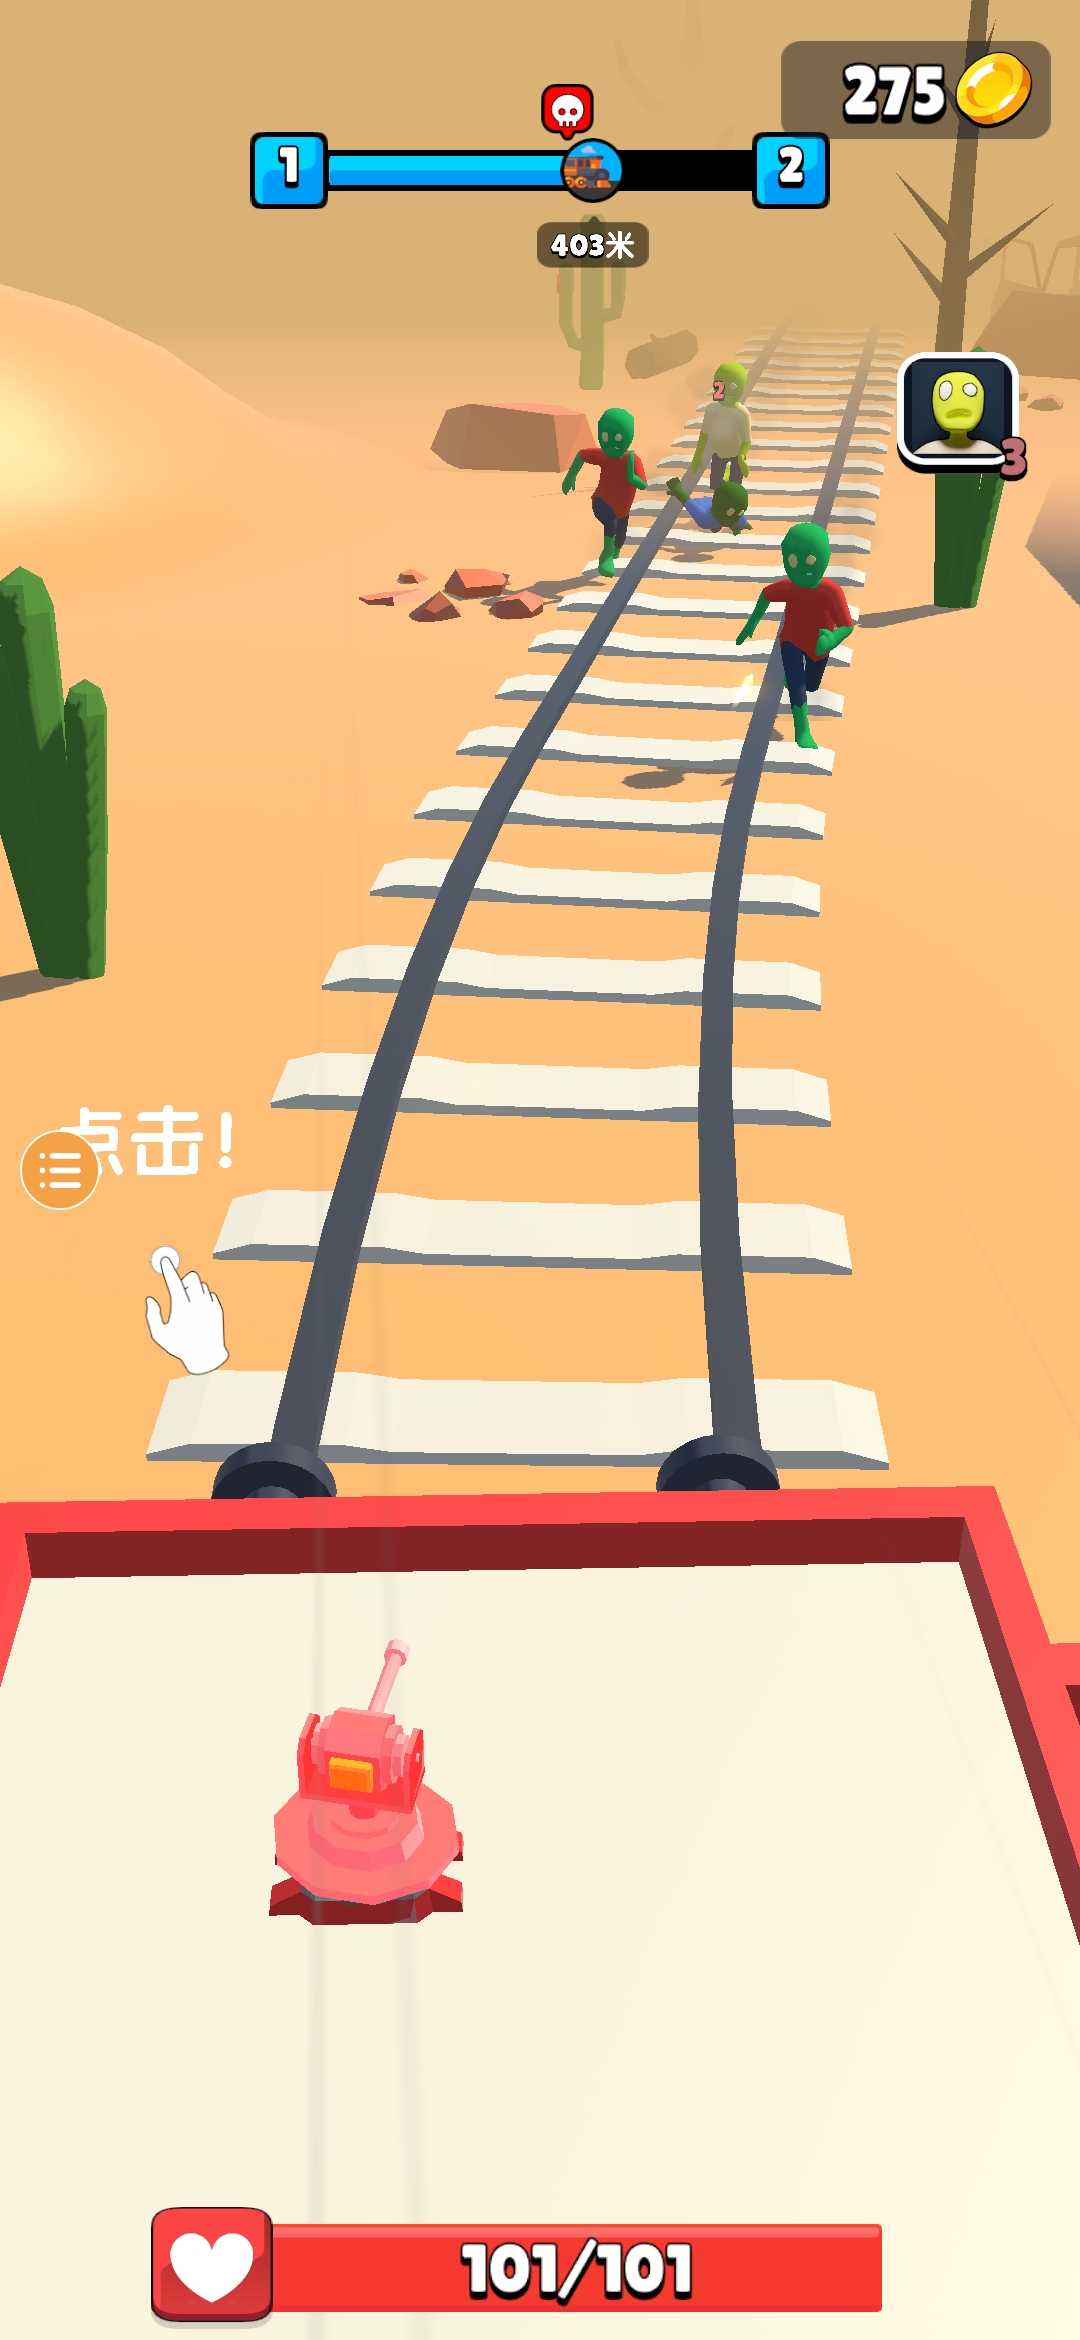 融合查尔斯小火车游戏安卓版 v1.0.3截图